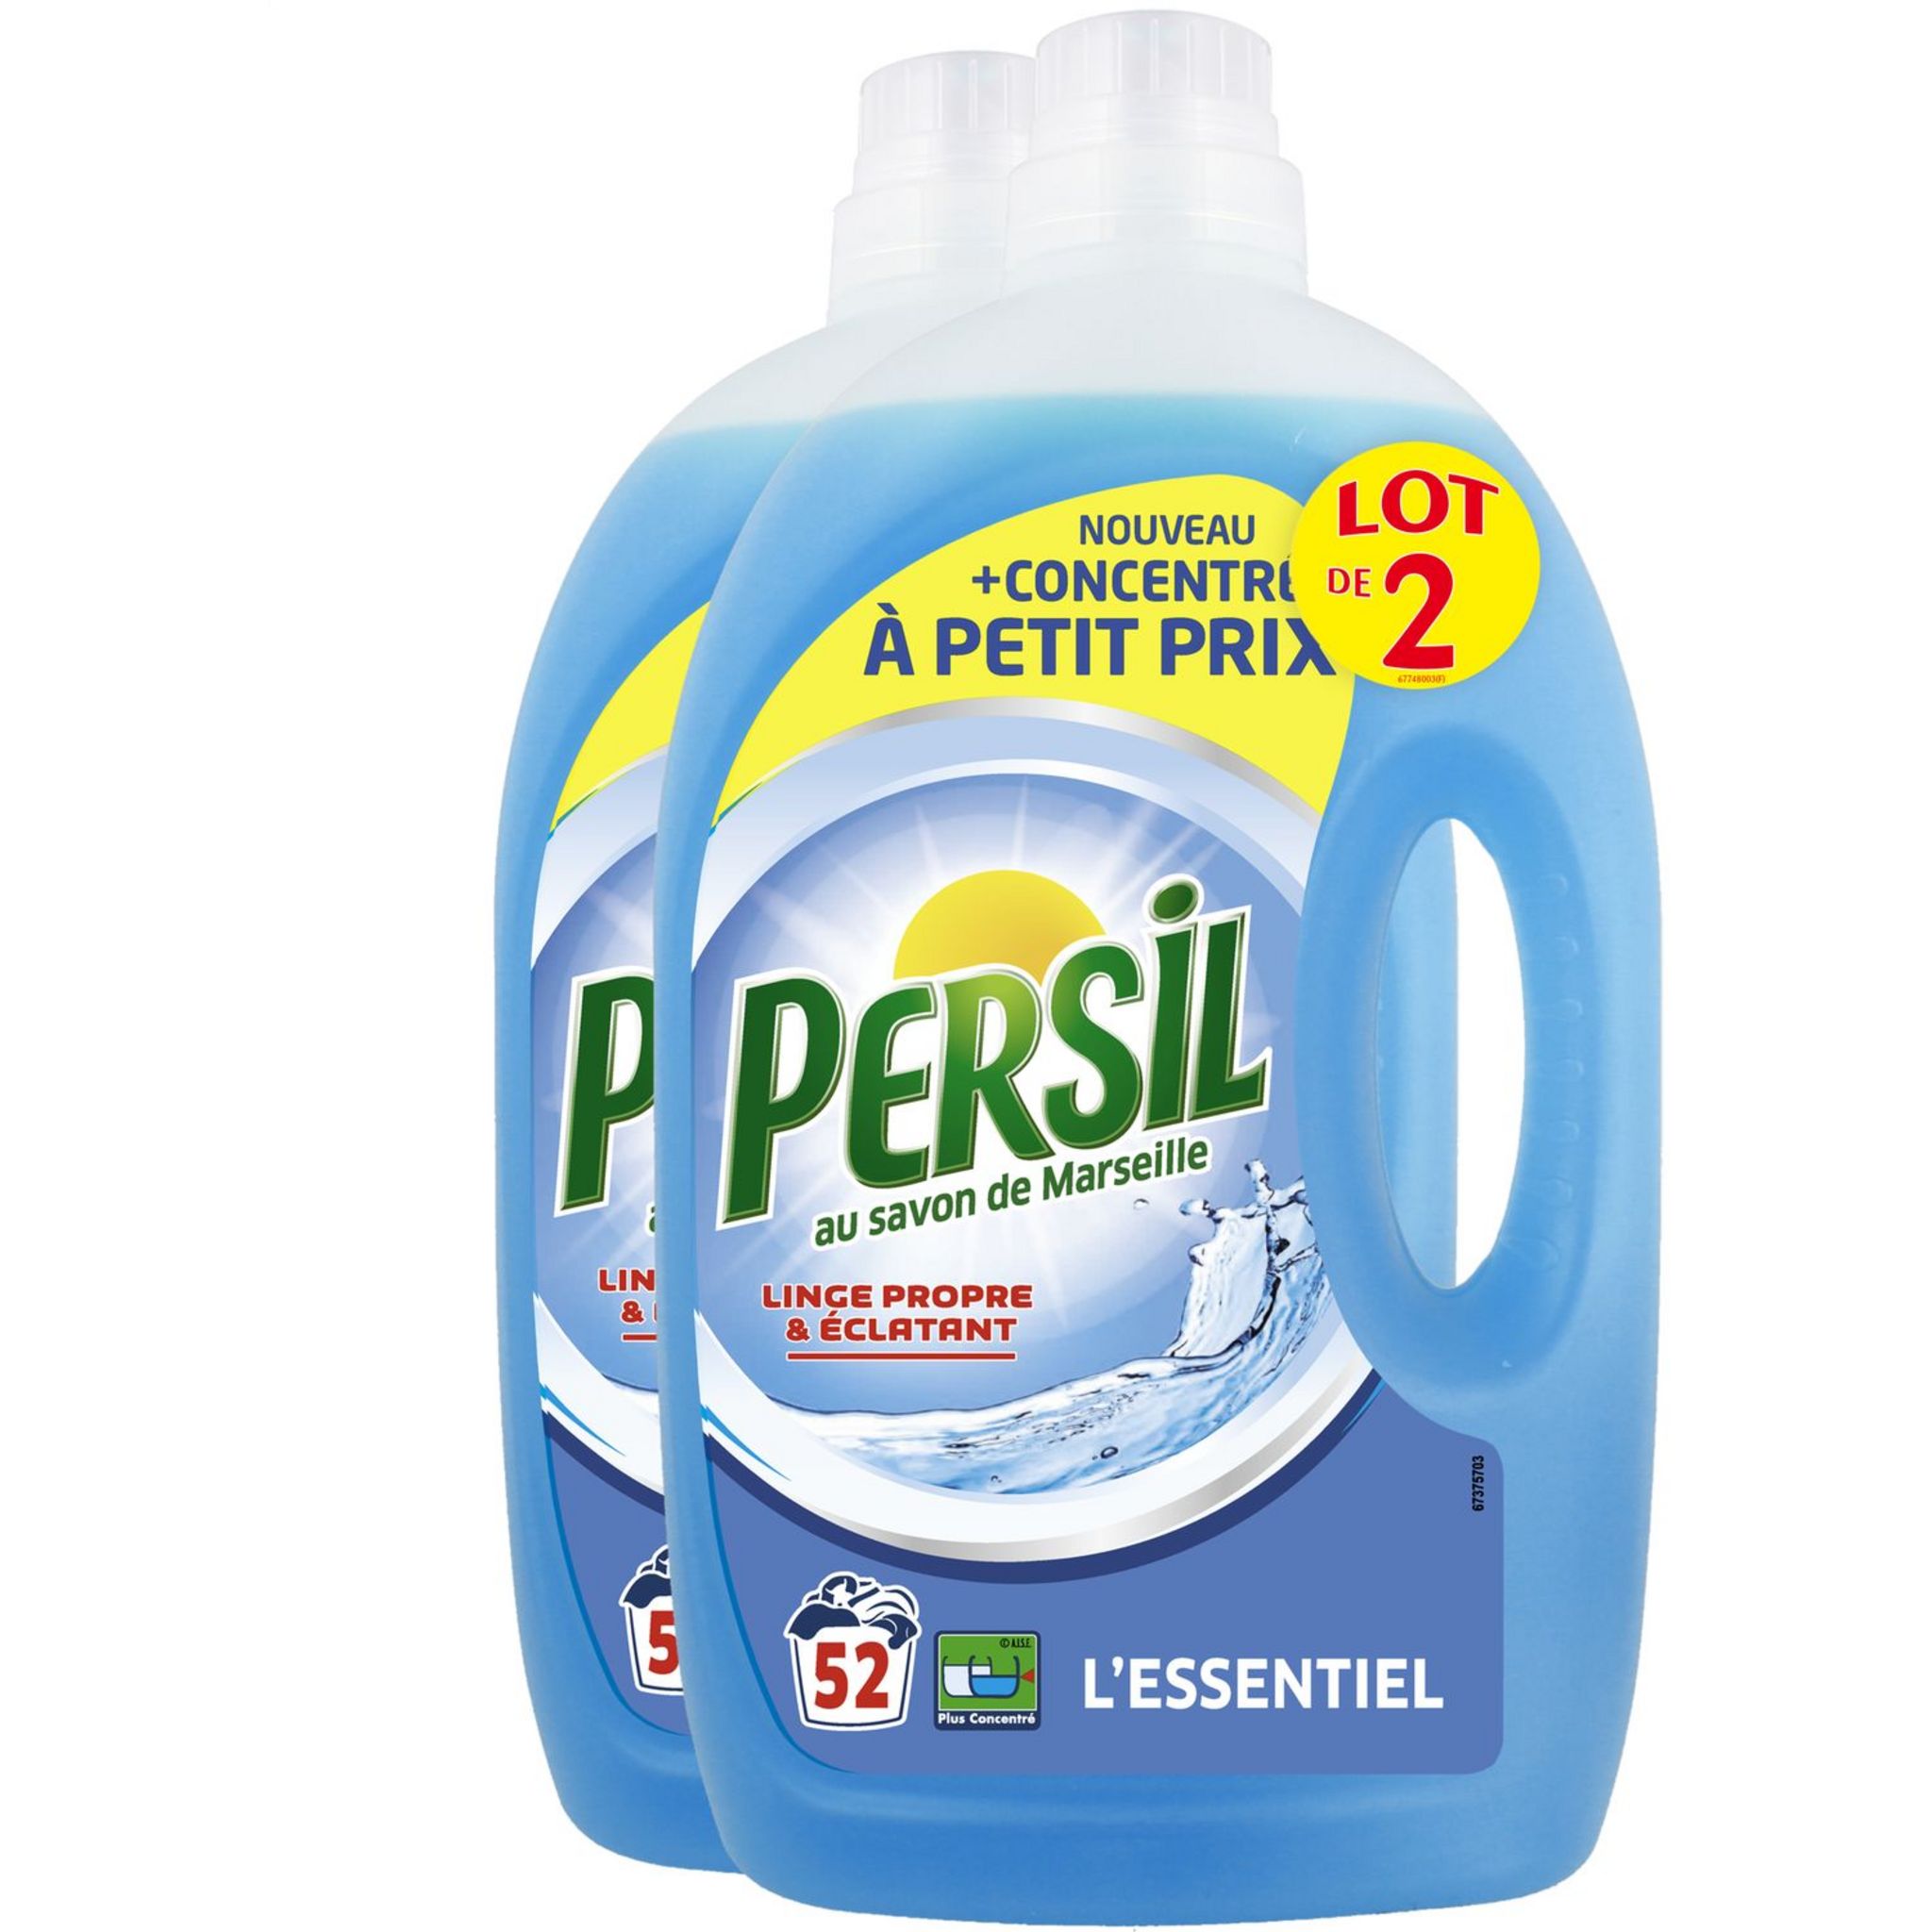 PERSIL Lessive liquide linge propre & éclatant 52 lavages 2,6l pas cher 